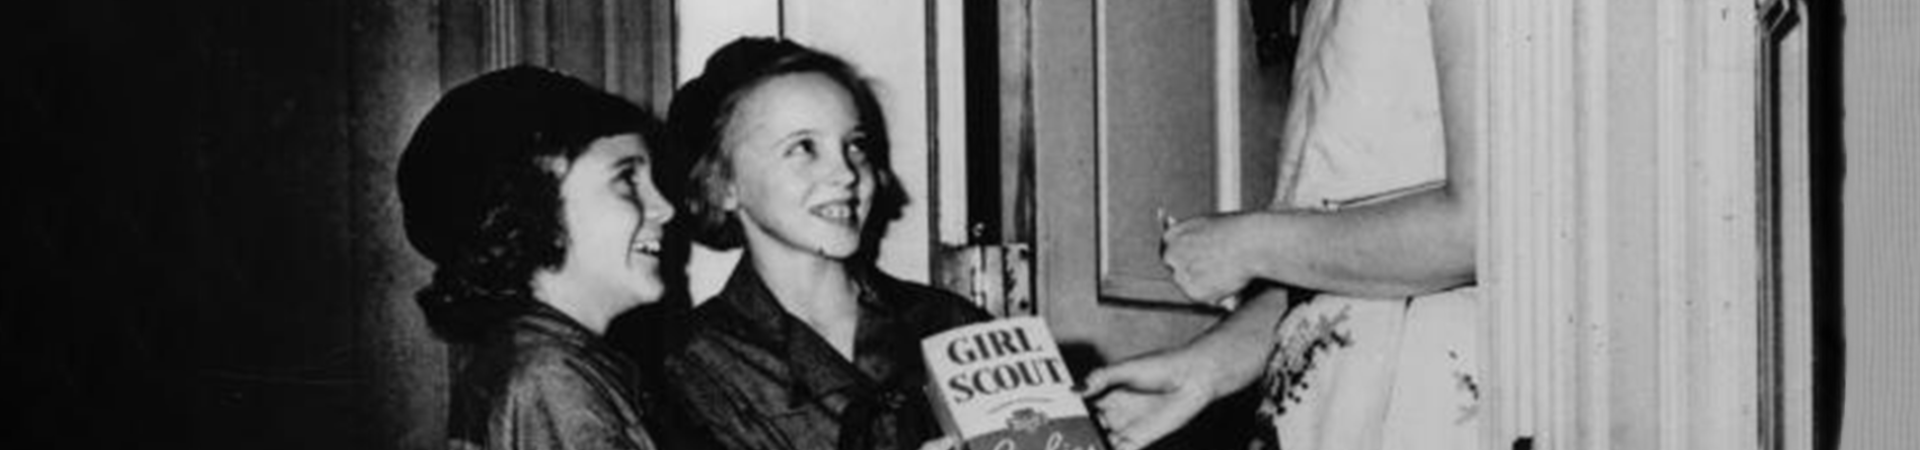  historical photo of girl scouts selling cookies door to door 